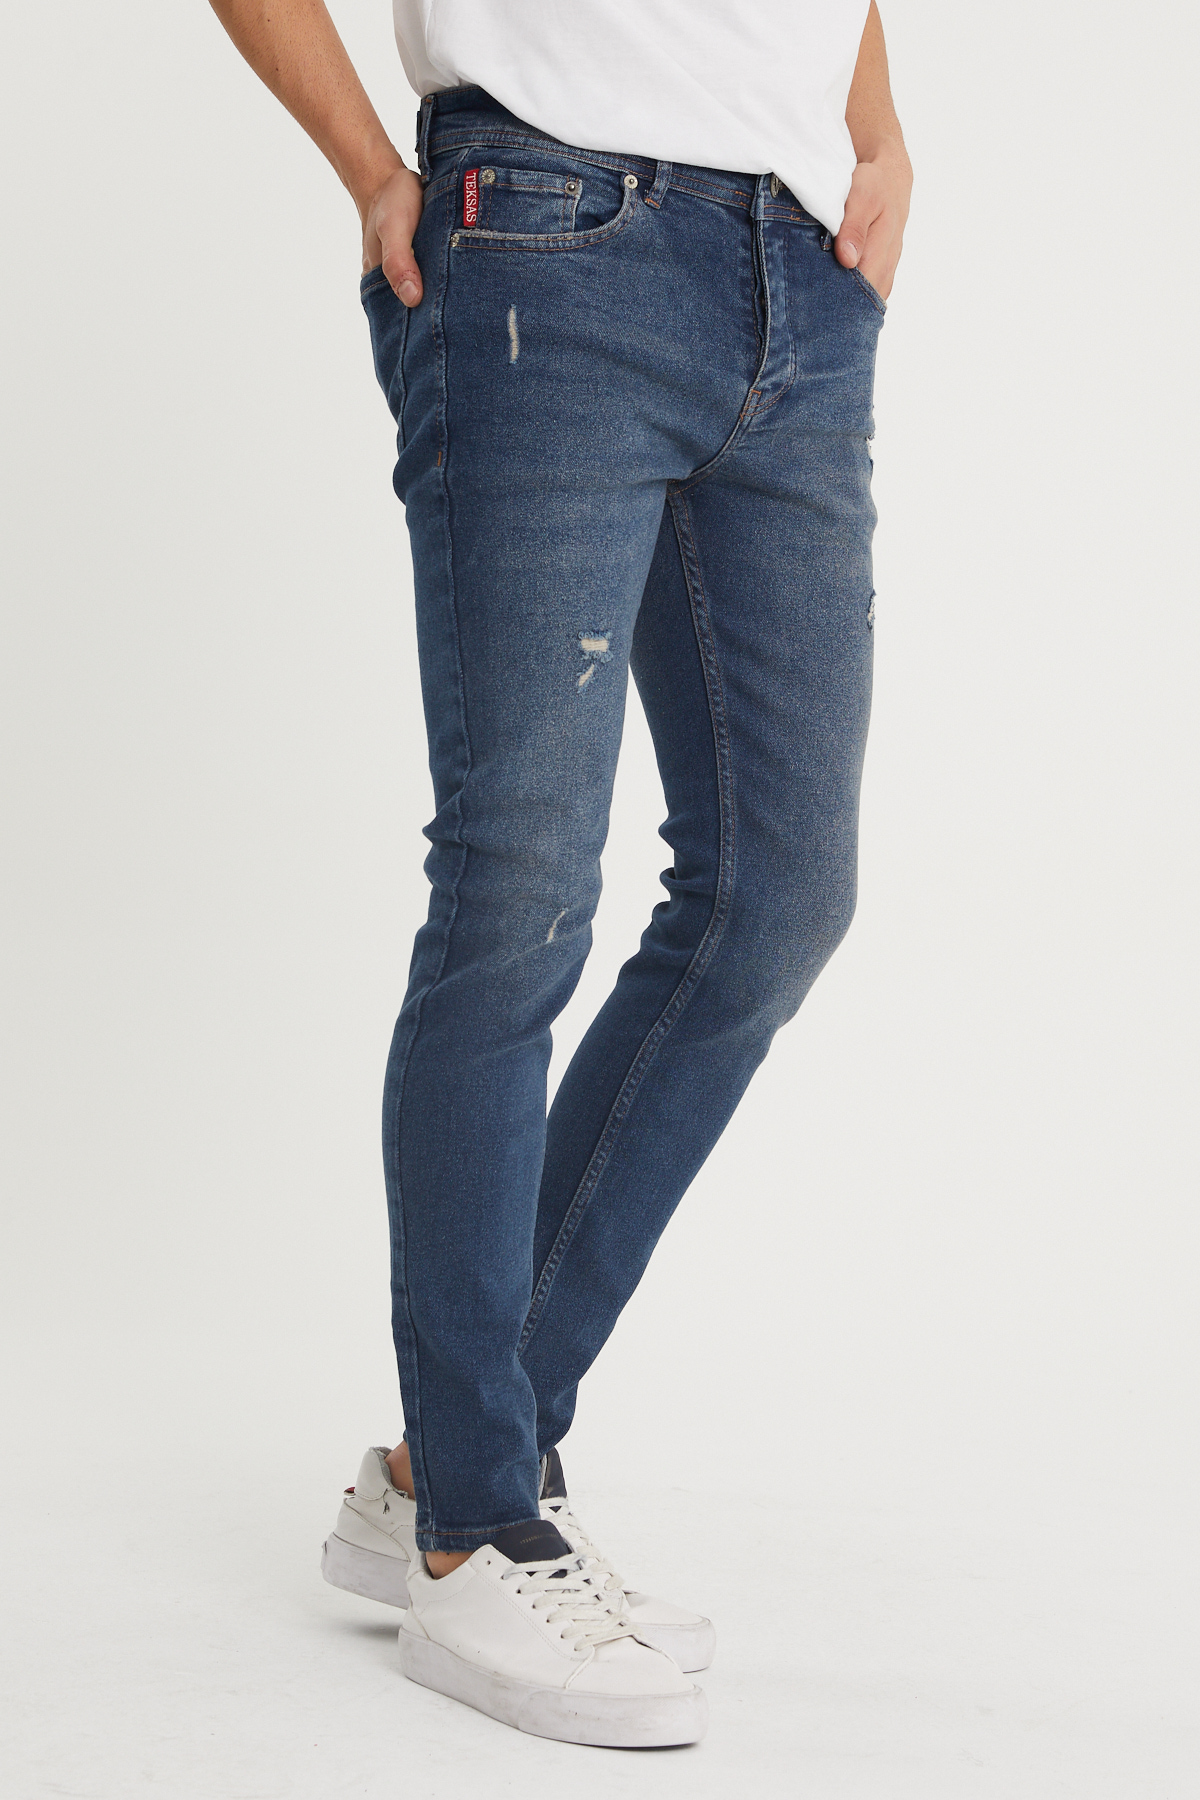 Yıkamalı Lacivert Slim Fit Jean Pantolon 1KXE5-44352-48 - 2